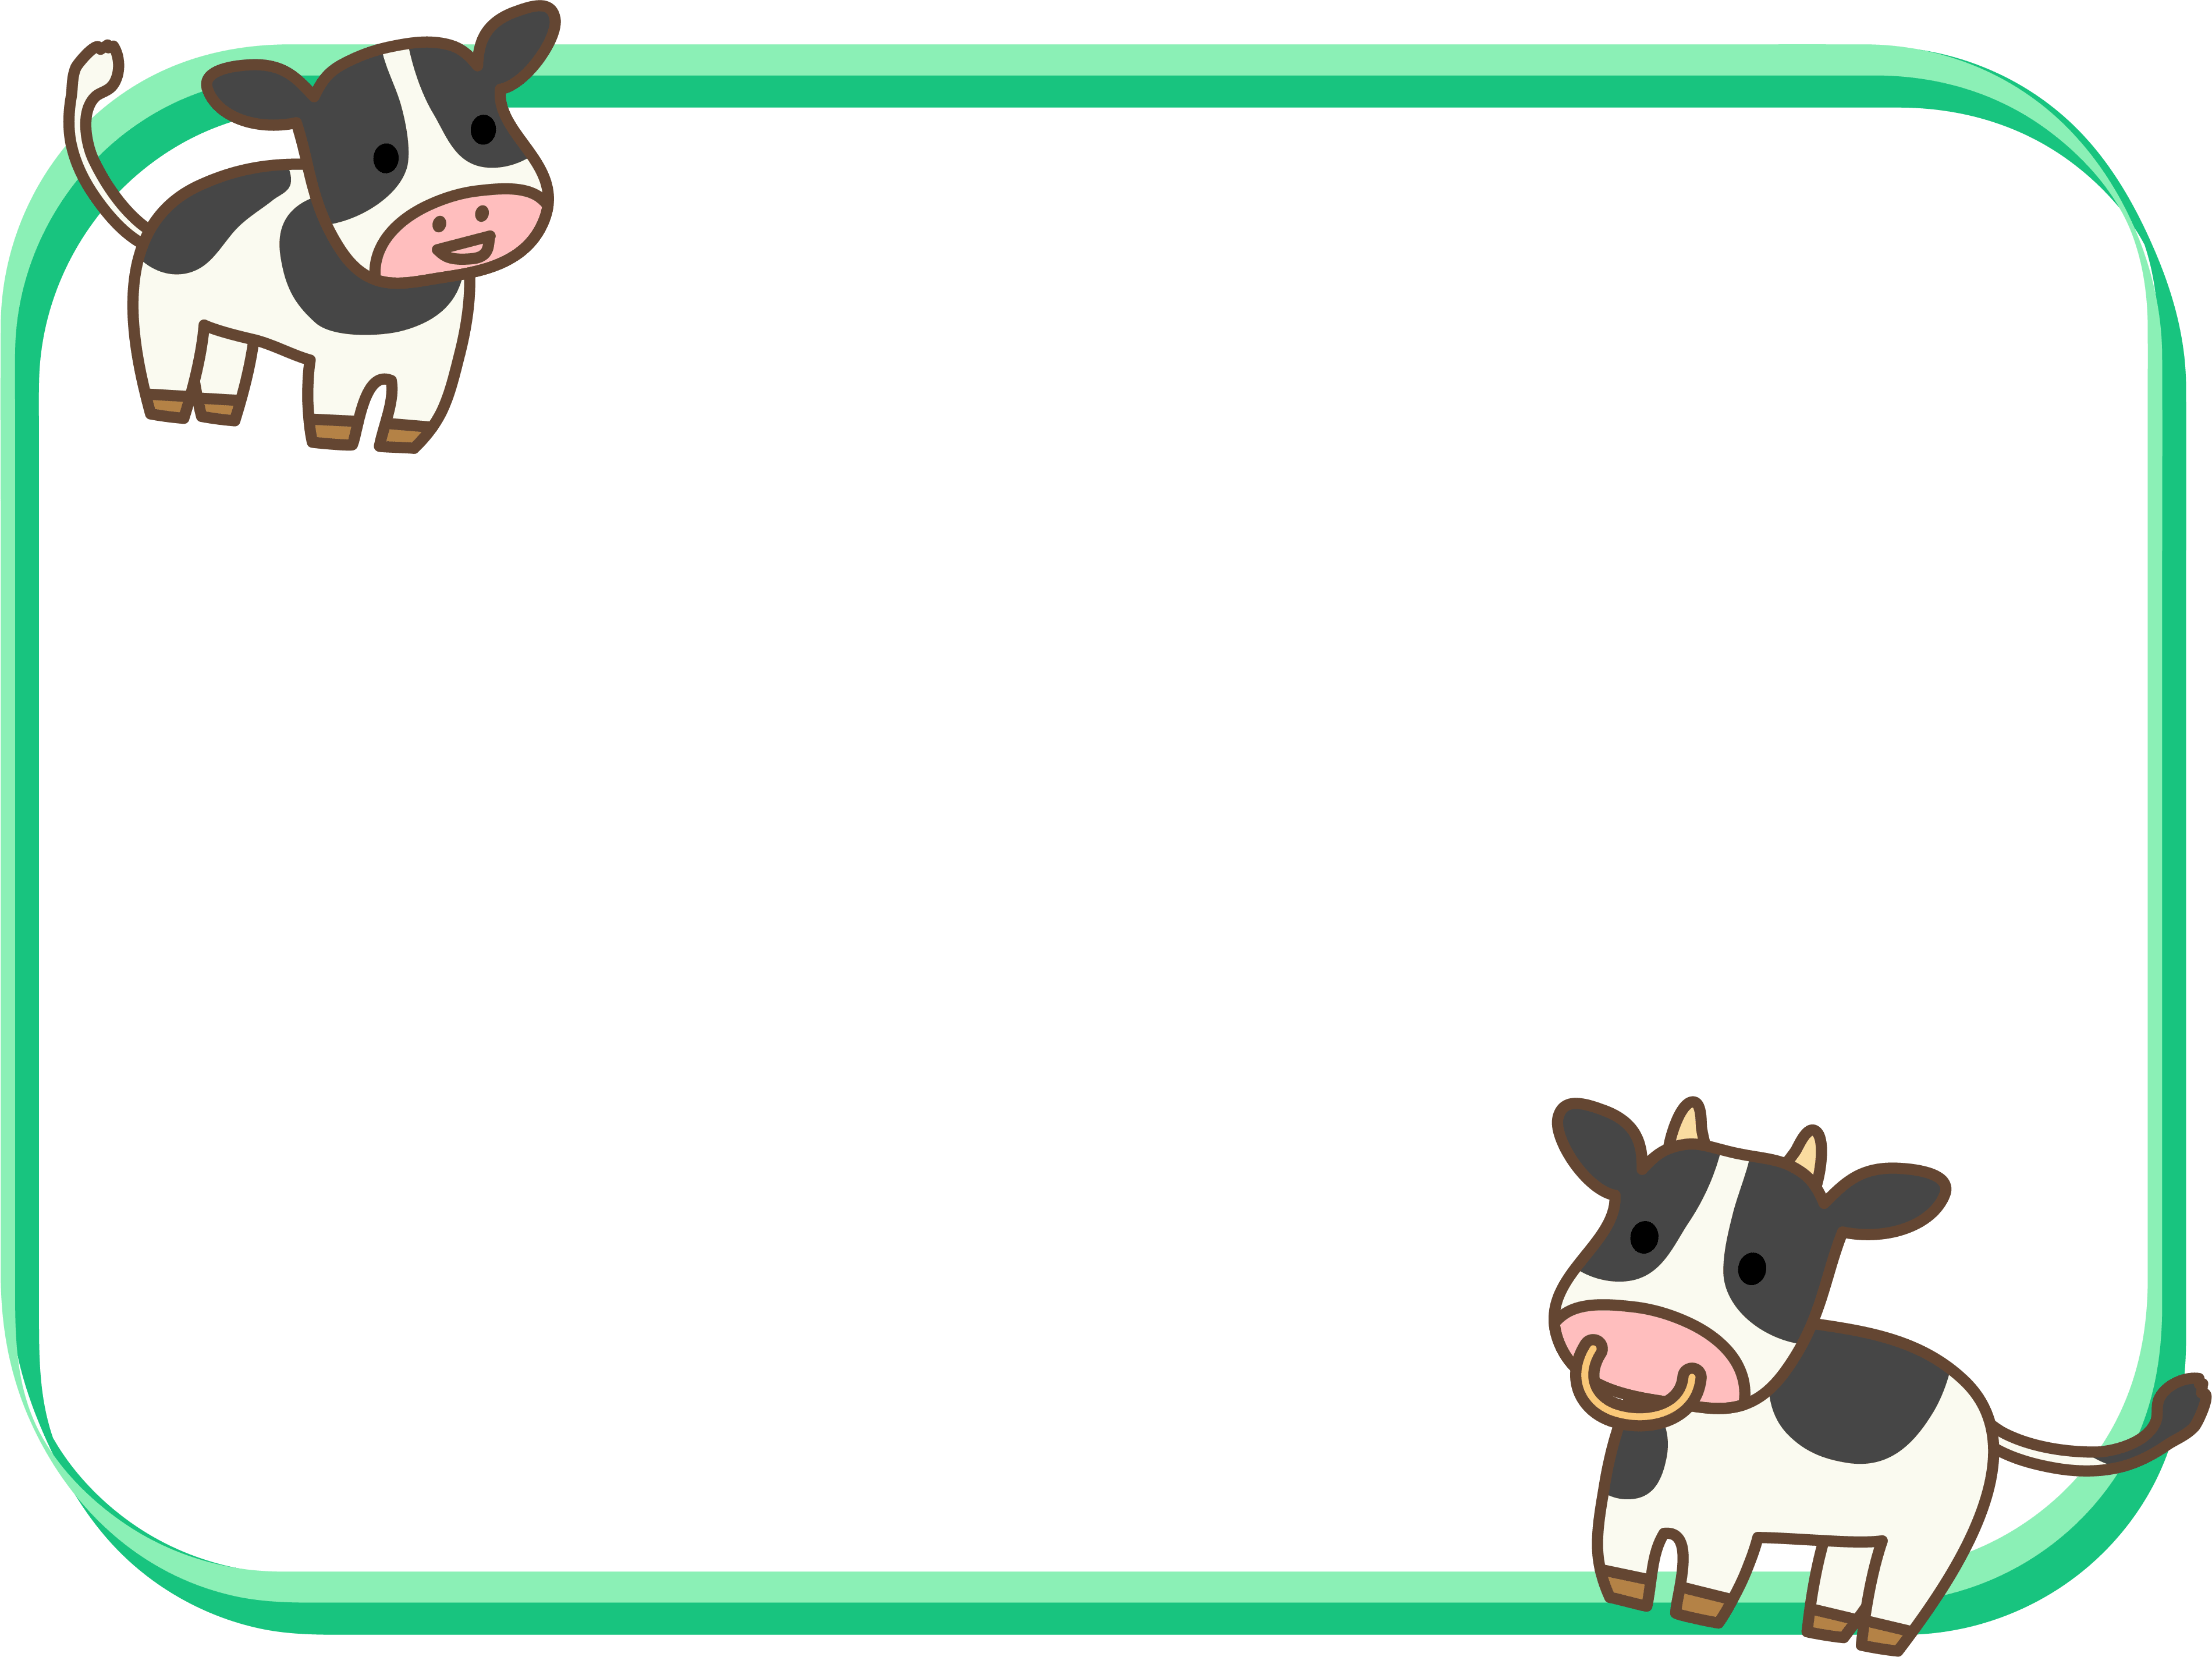 2頭のかわいい牛と緑色の四角フレーム飾り枠